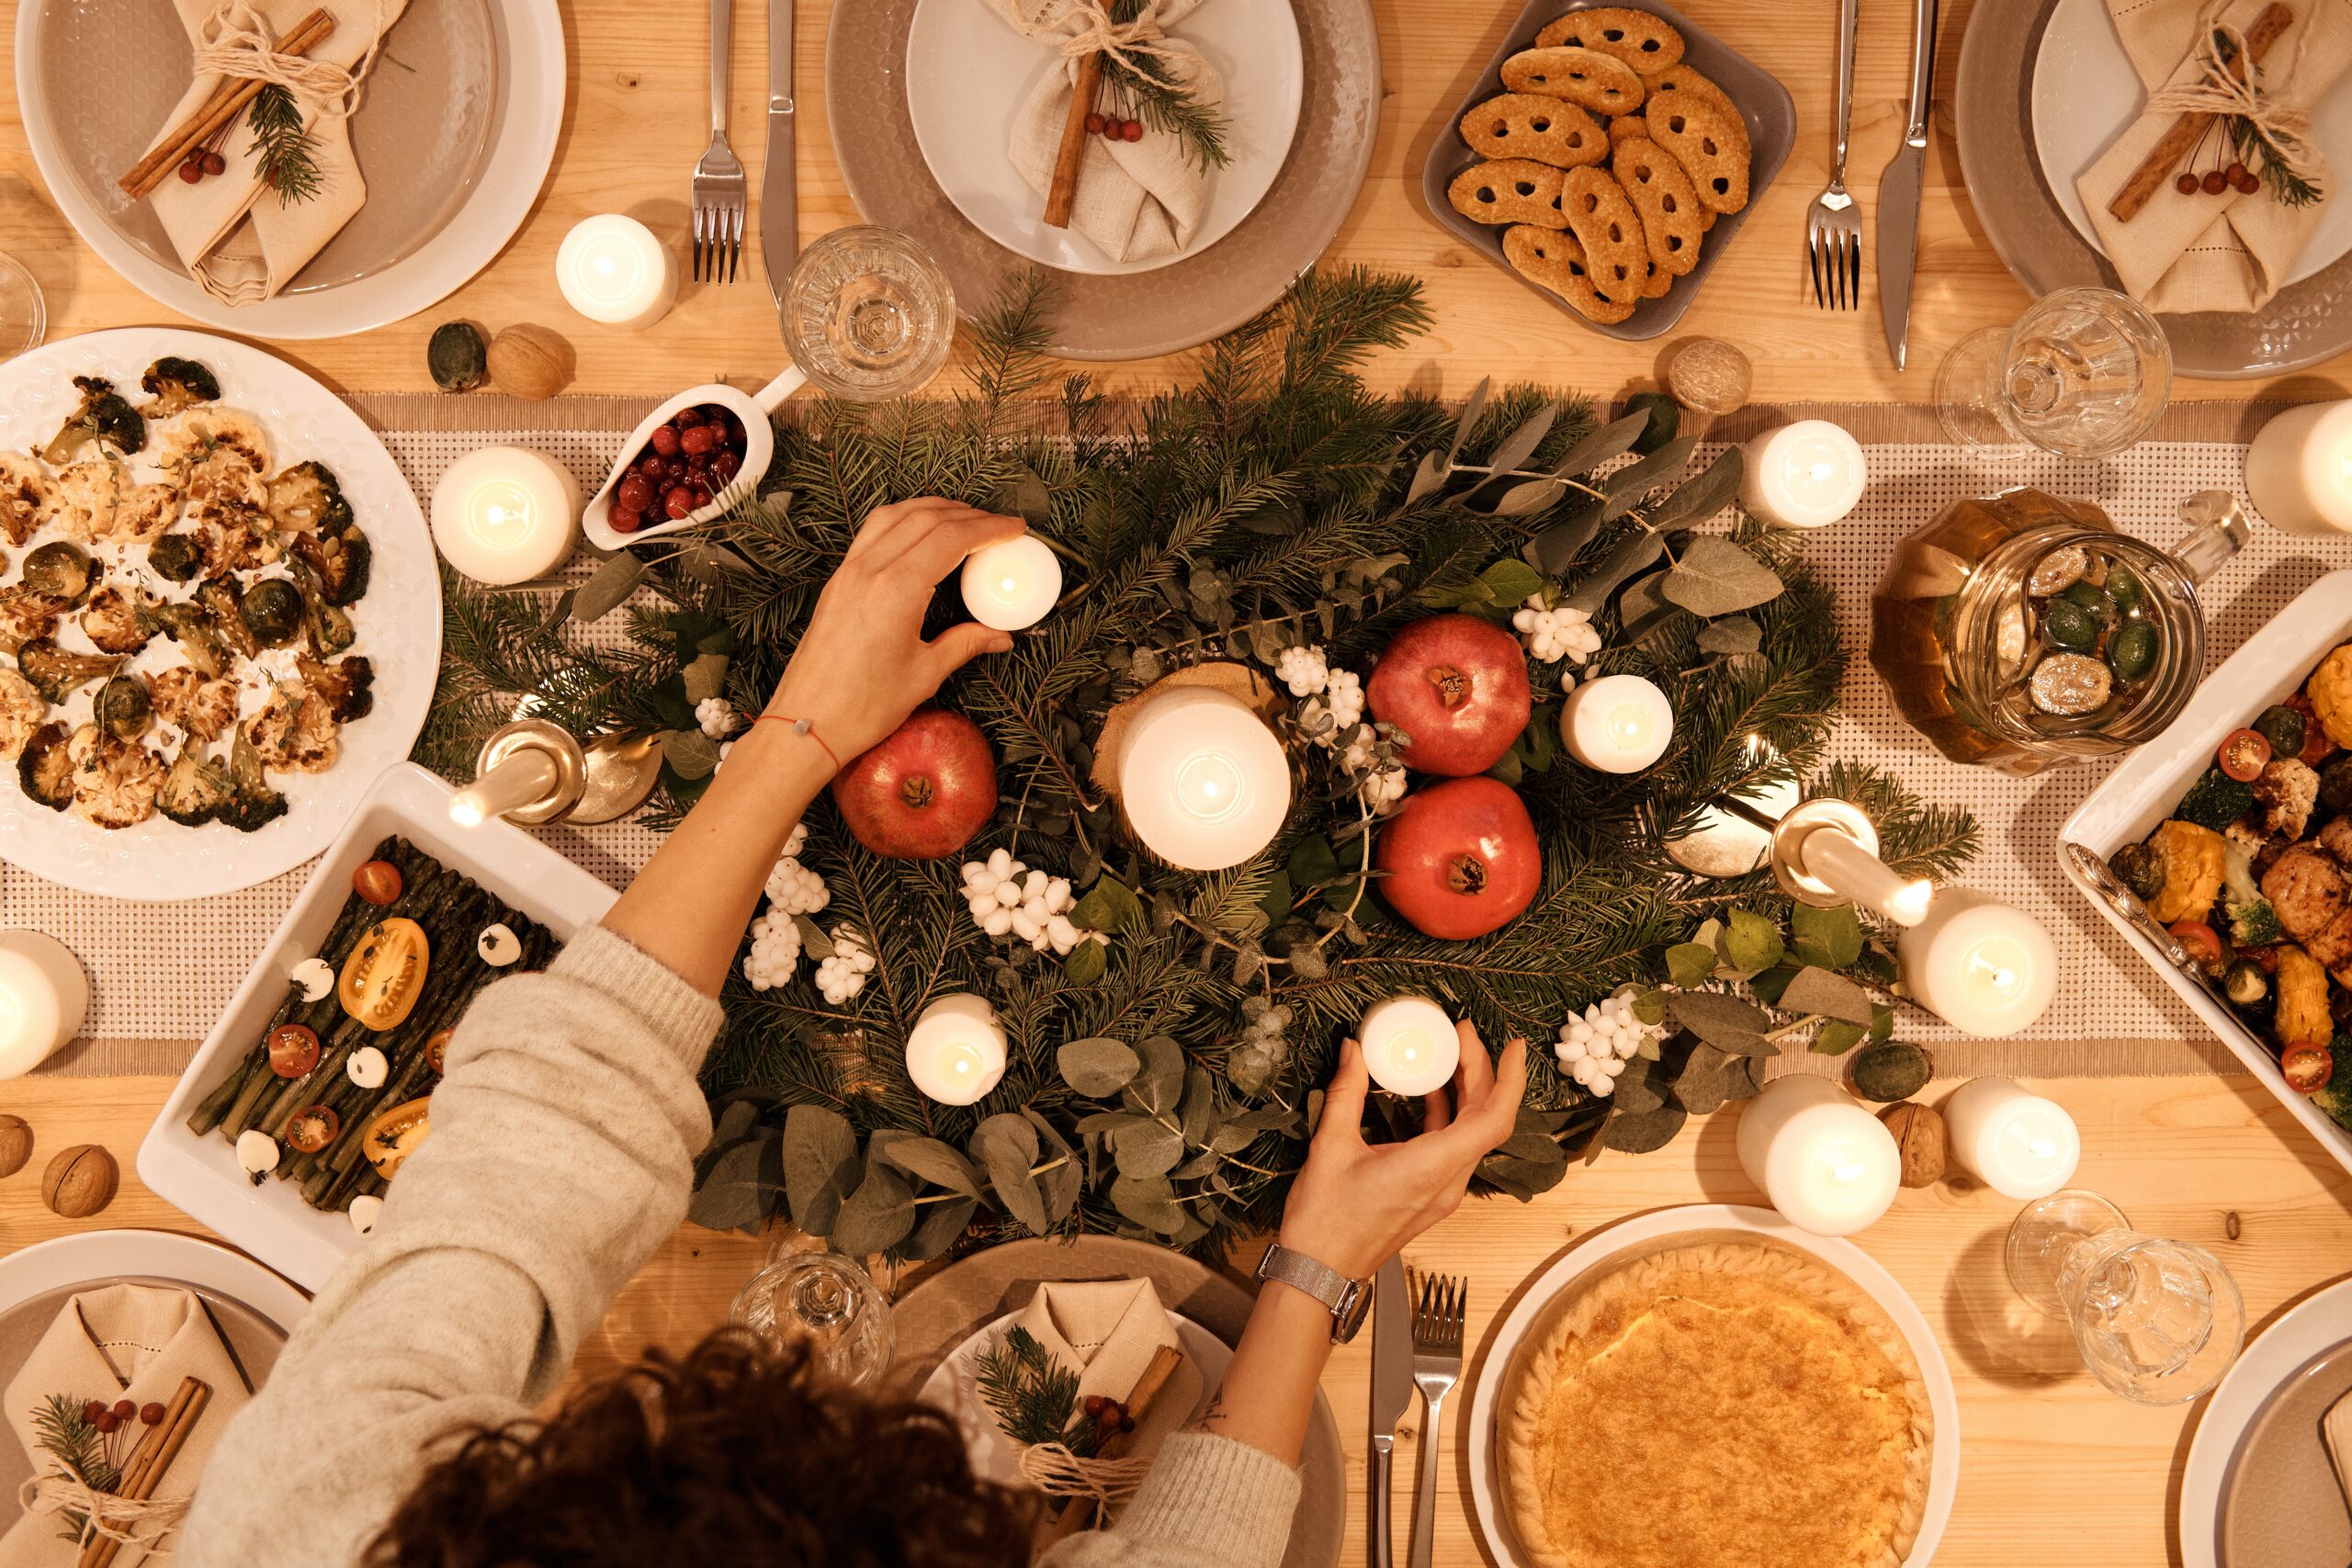  Cùng điểm danh những loại trái cây không thể bỏ qua trong bữa tối Giáng sinh của bạn nhé!